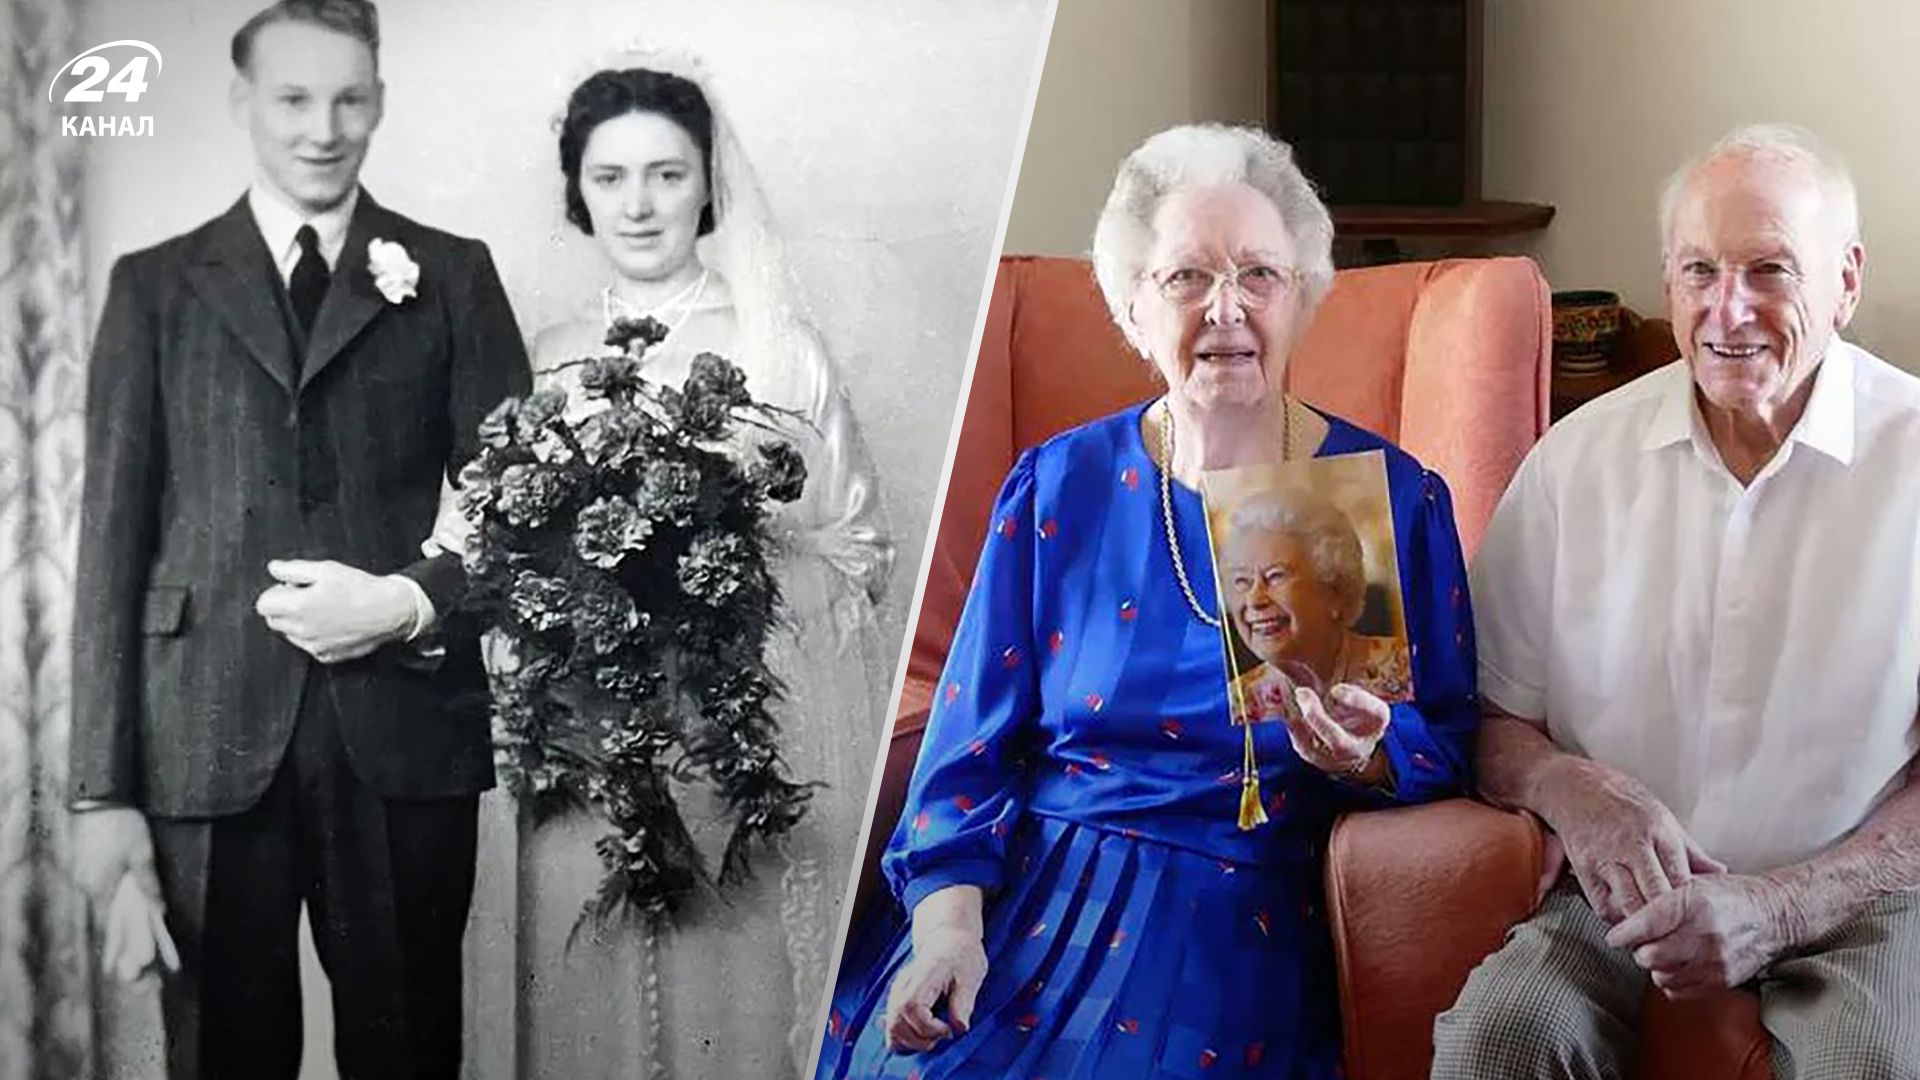 Дороті та Тім Волтери, які перебувають у шлюбі 81 рік, поділилися секретом щастя